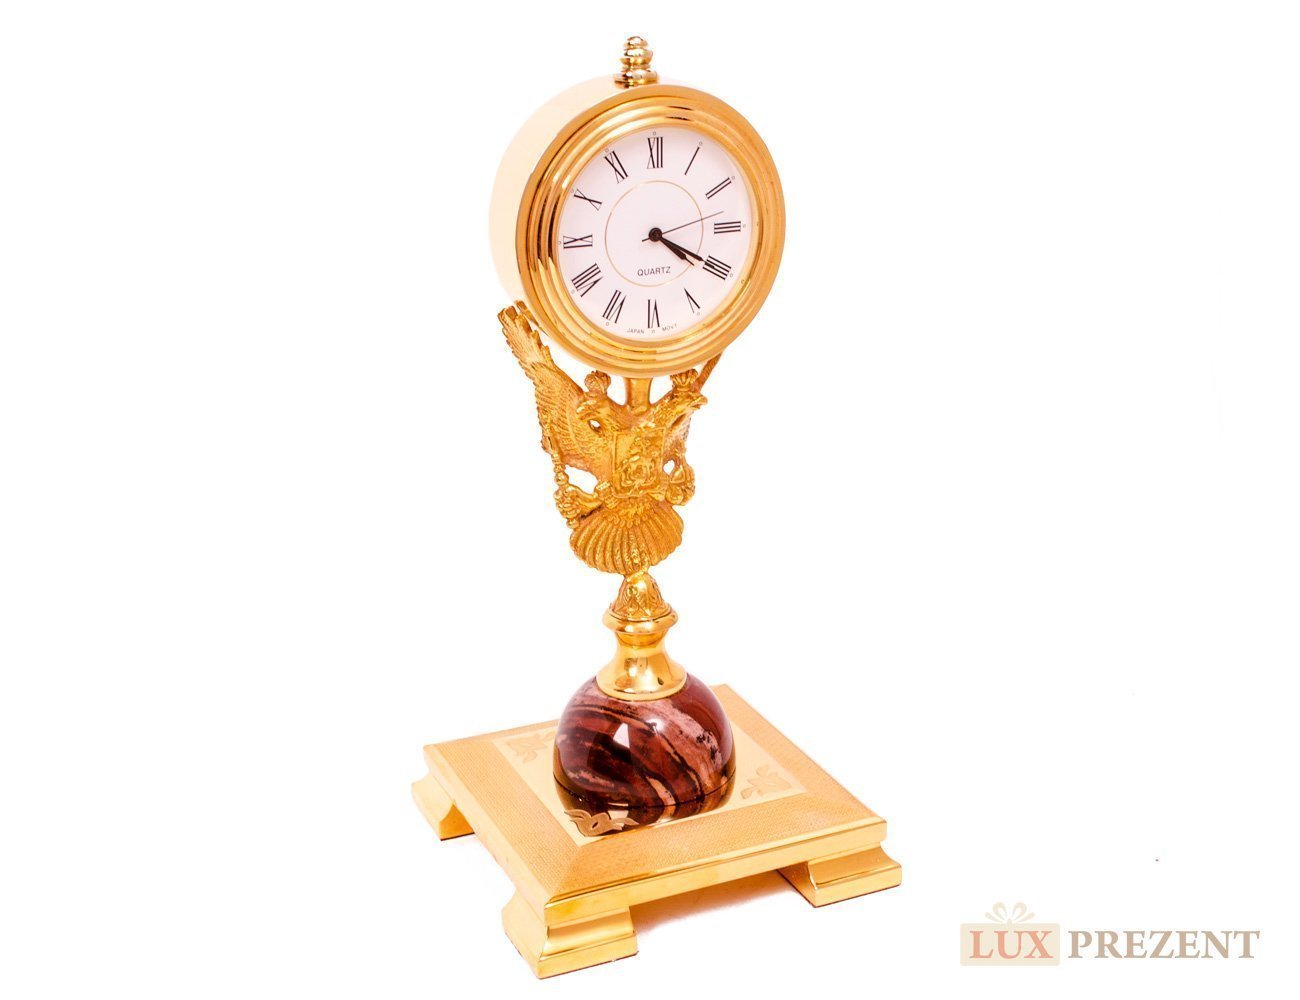 Златоустовские часы "Герб" яшма